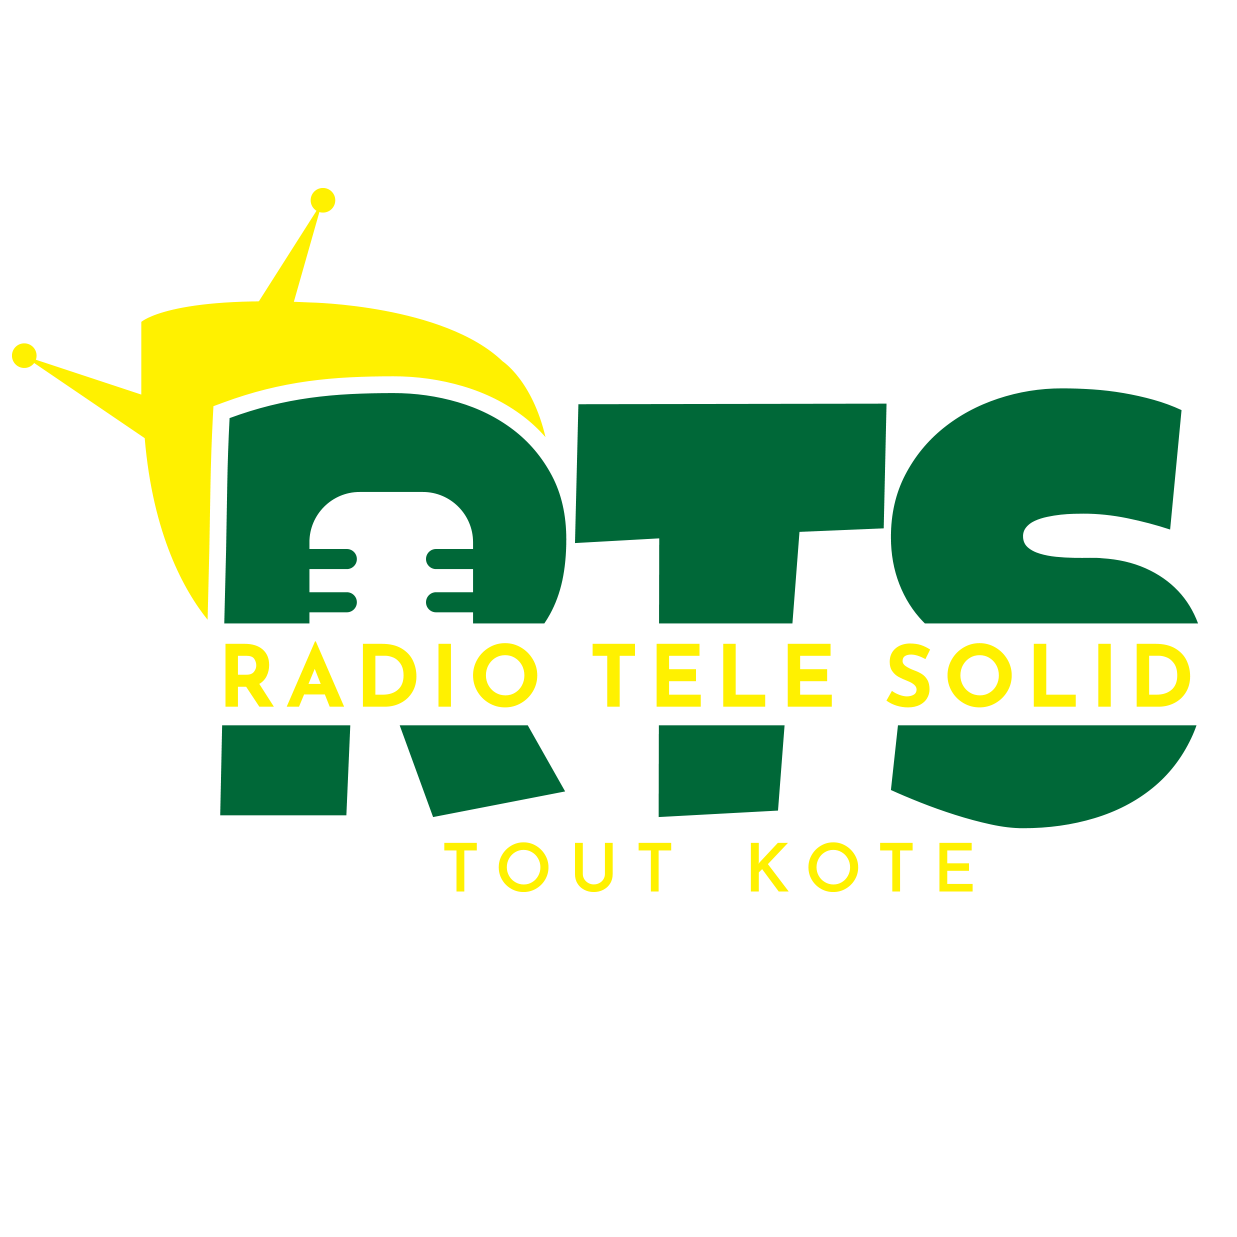 Radio Tele Solid